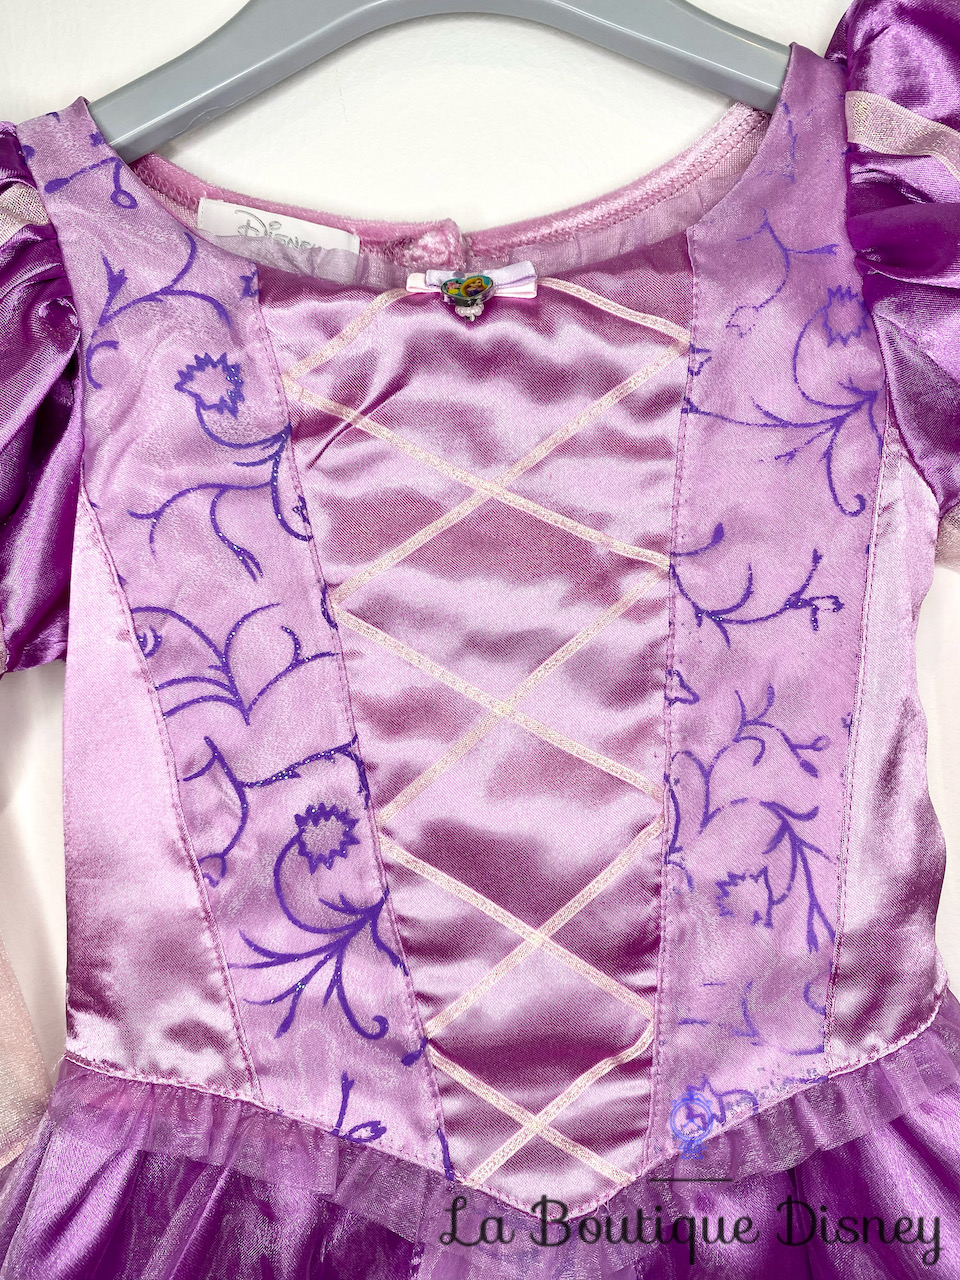 Déguisement Raiponce Disney Princess taille 5-6 ans robe violet -  Déguisements/Taille 4 à 6 ans - La Boutique Disney